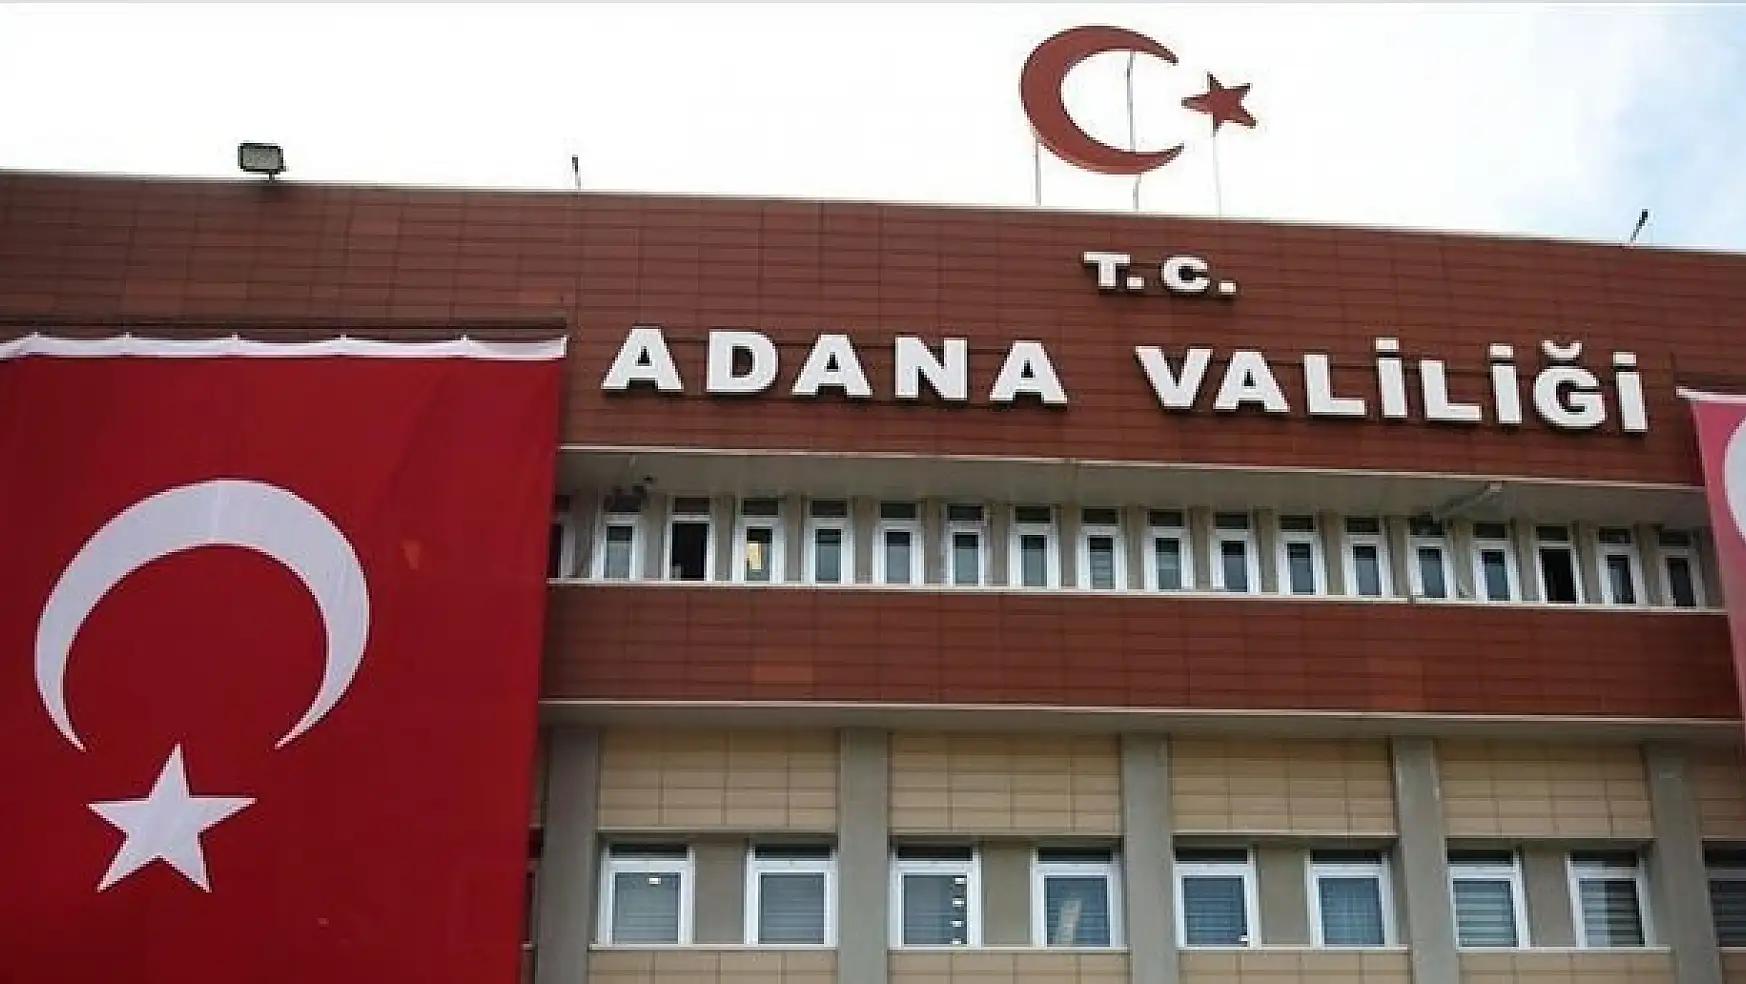 Adana Valiliğinden il sınırı değişikliği iddialarına cevap